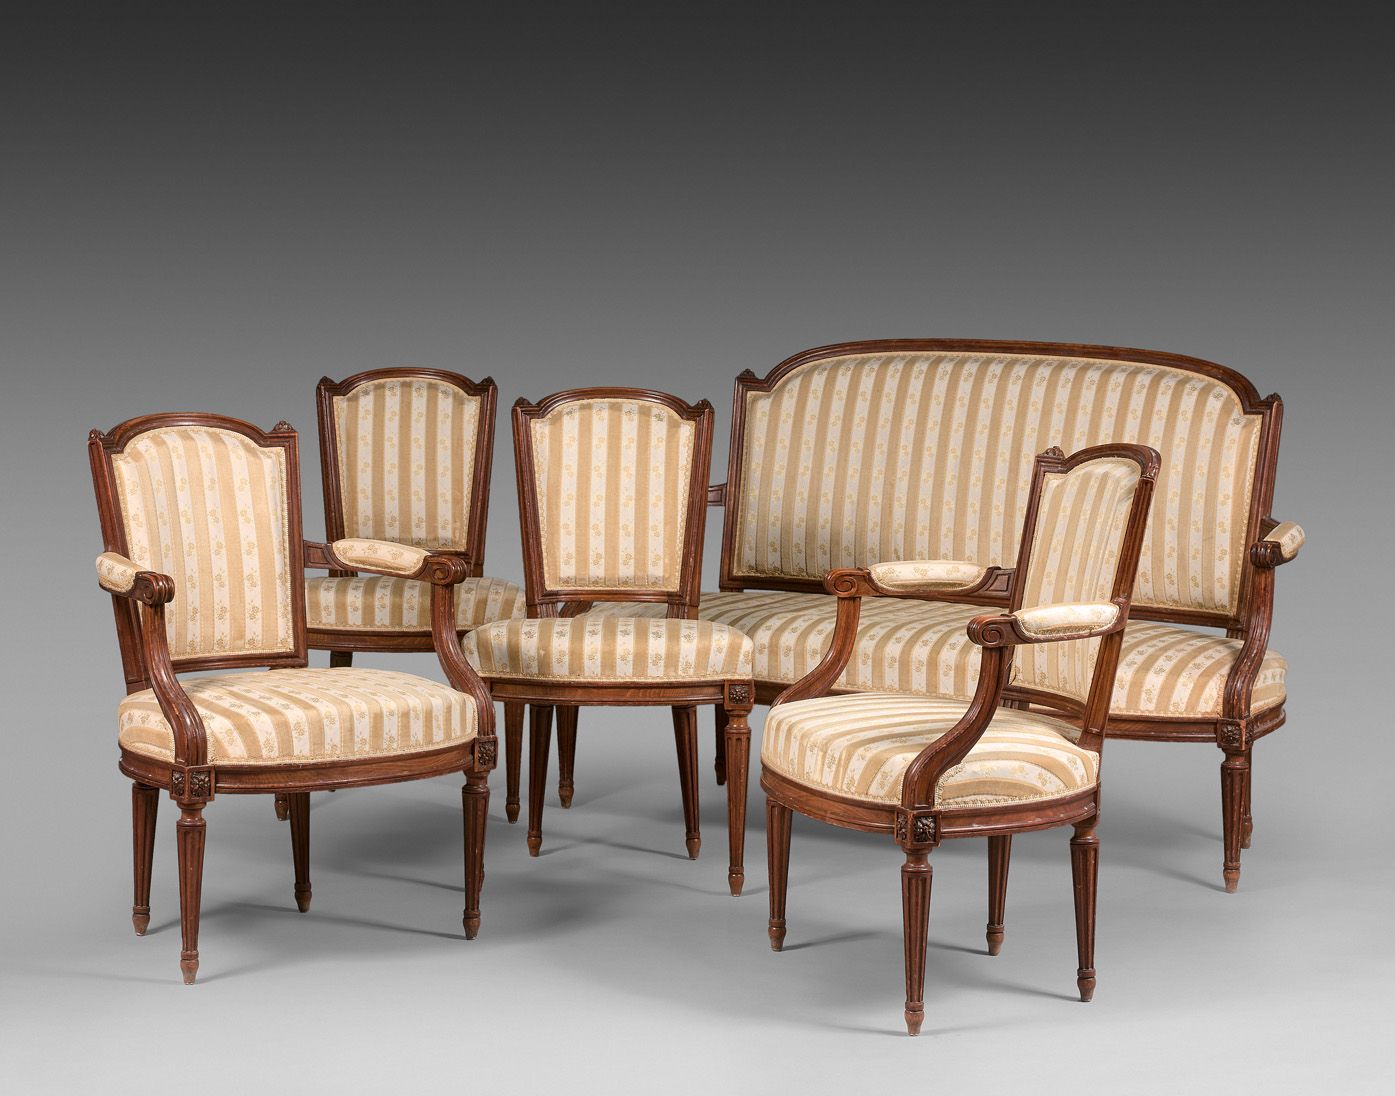 Null 客厅家具采用天然木材，凹槽腿，包括一个沙发，两个扶手椅和两个椅子。路易十六的风格。